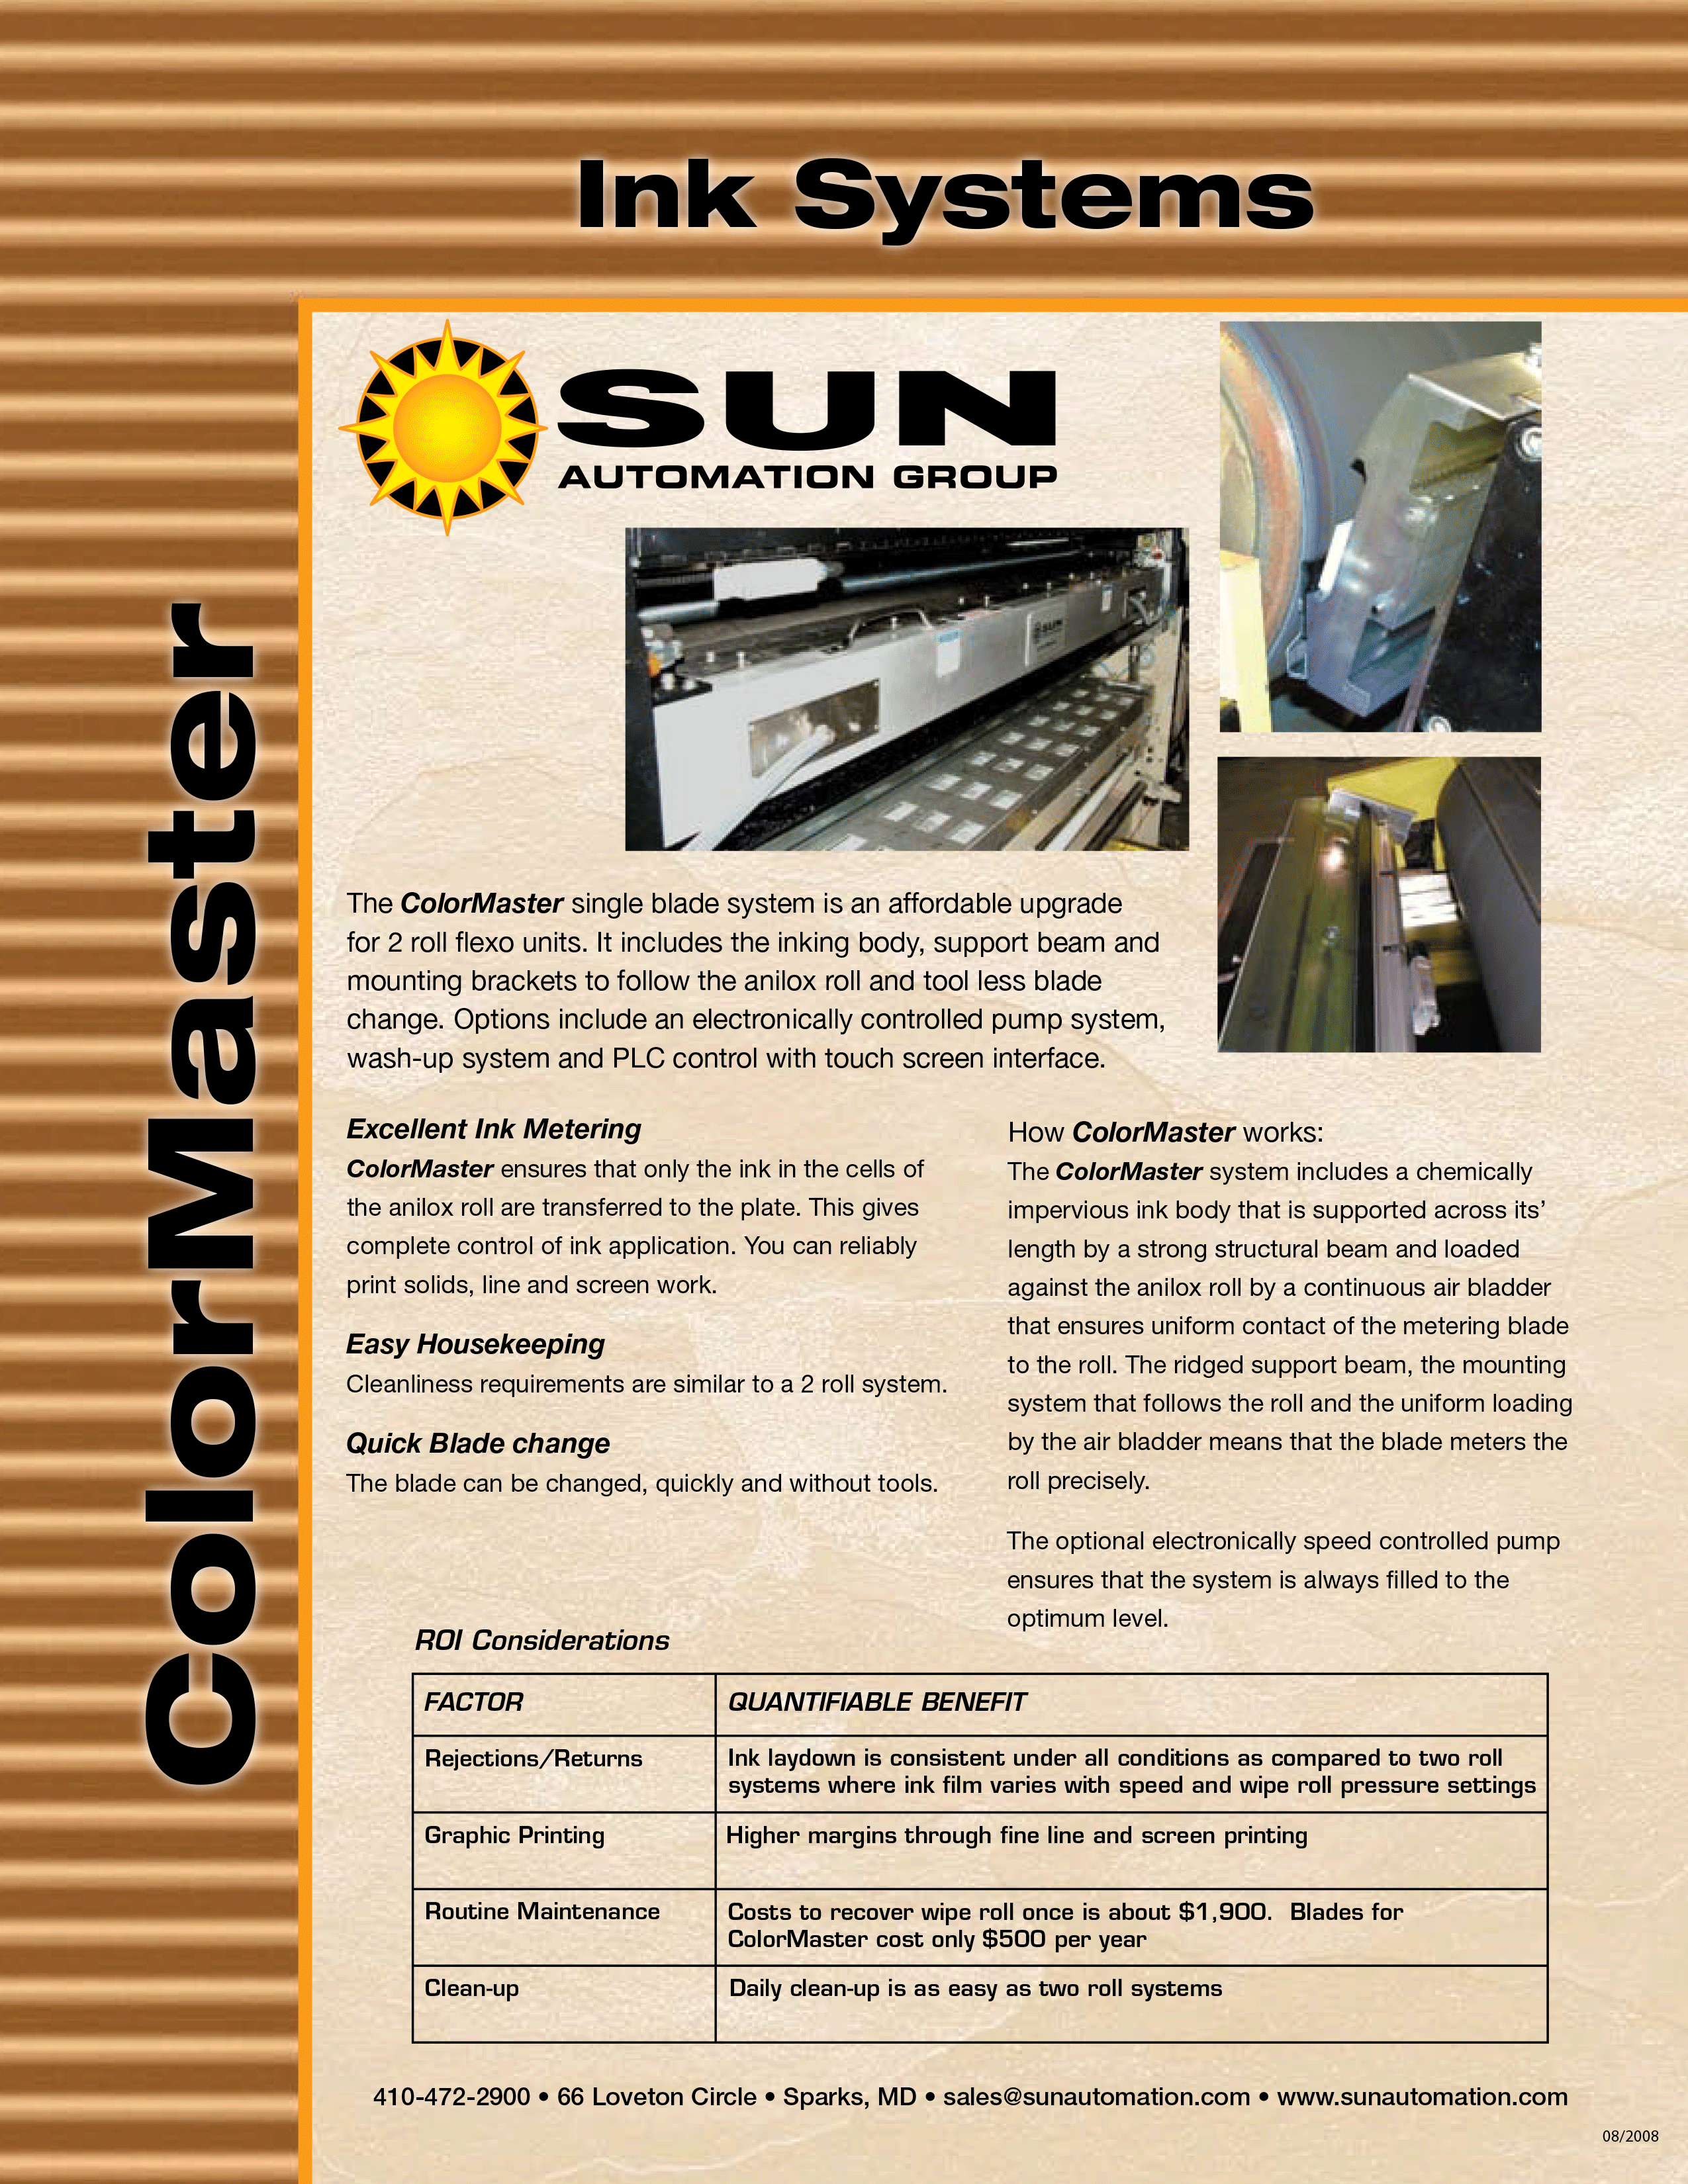 Conozca más acerca del Sistema de Rasqueta Sencilla ColorMaster de Sun Automation en el folleto.